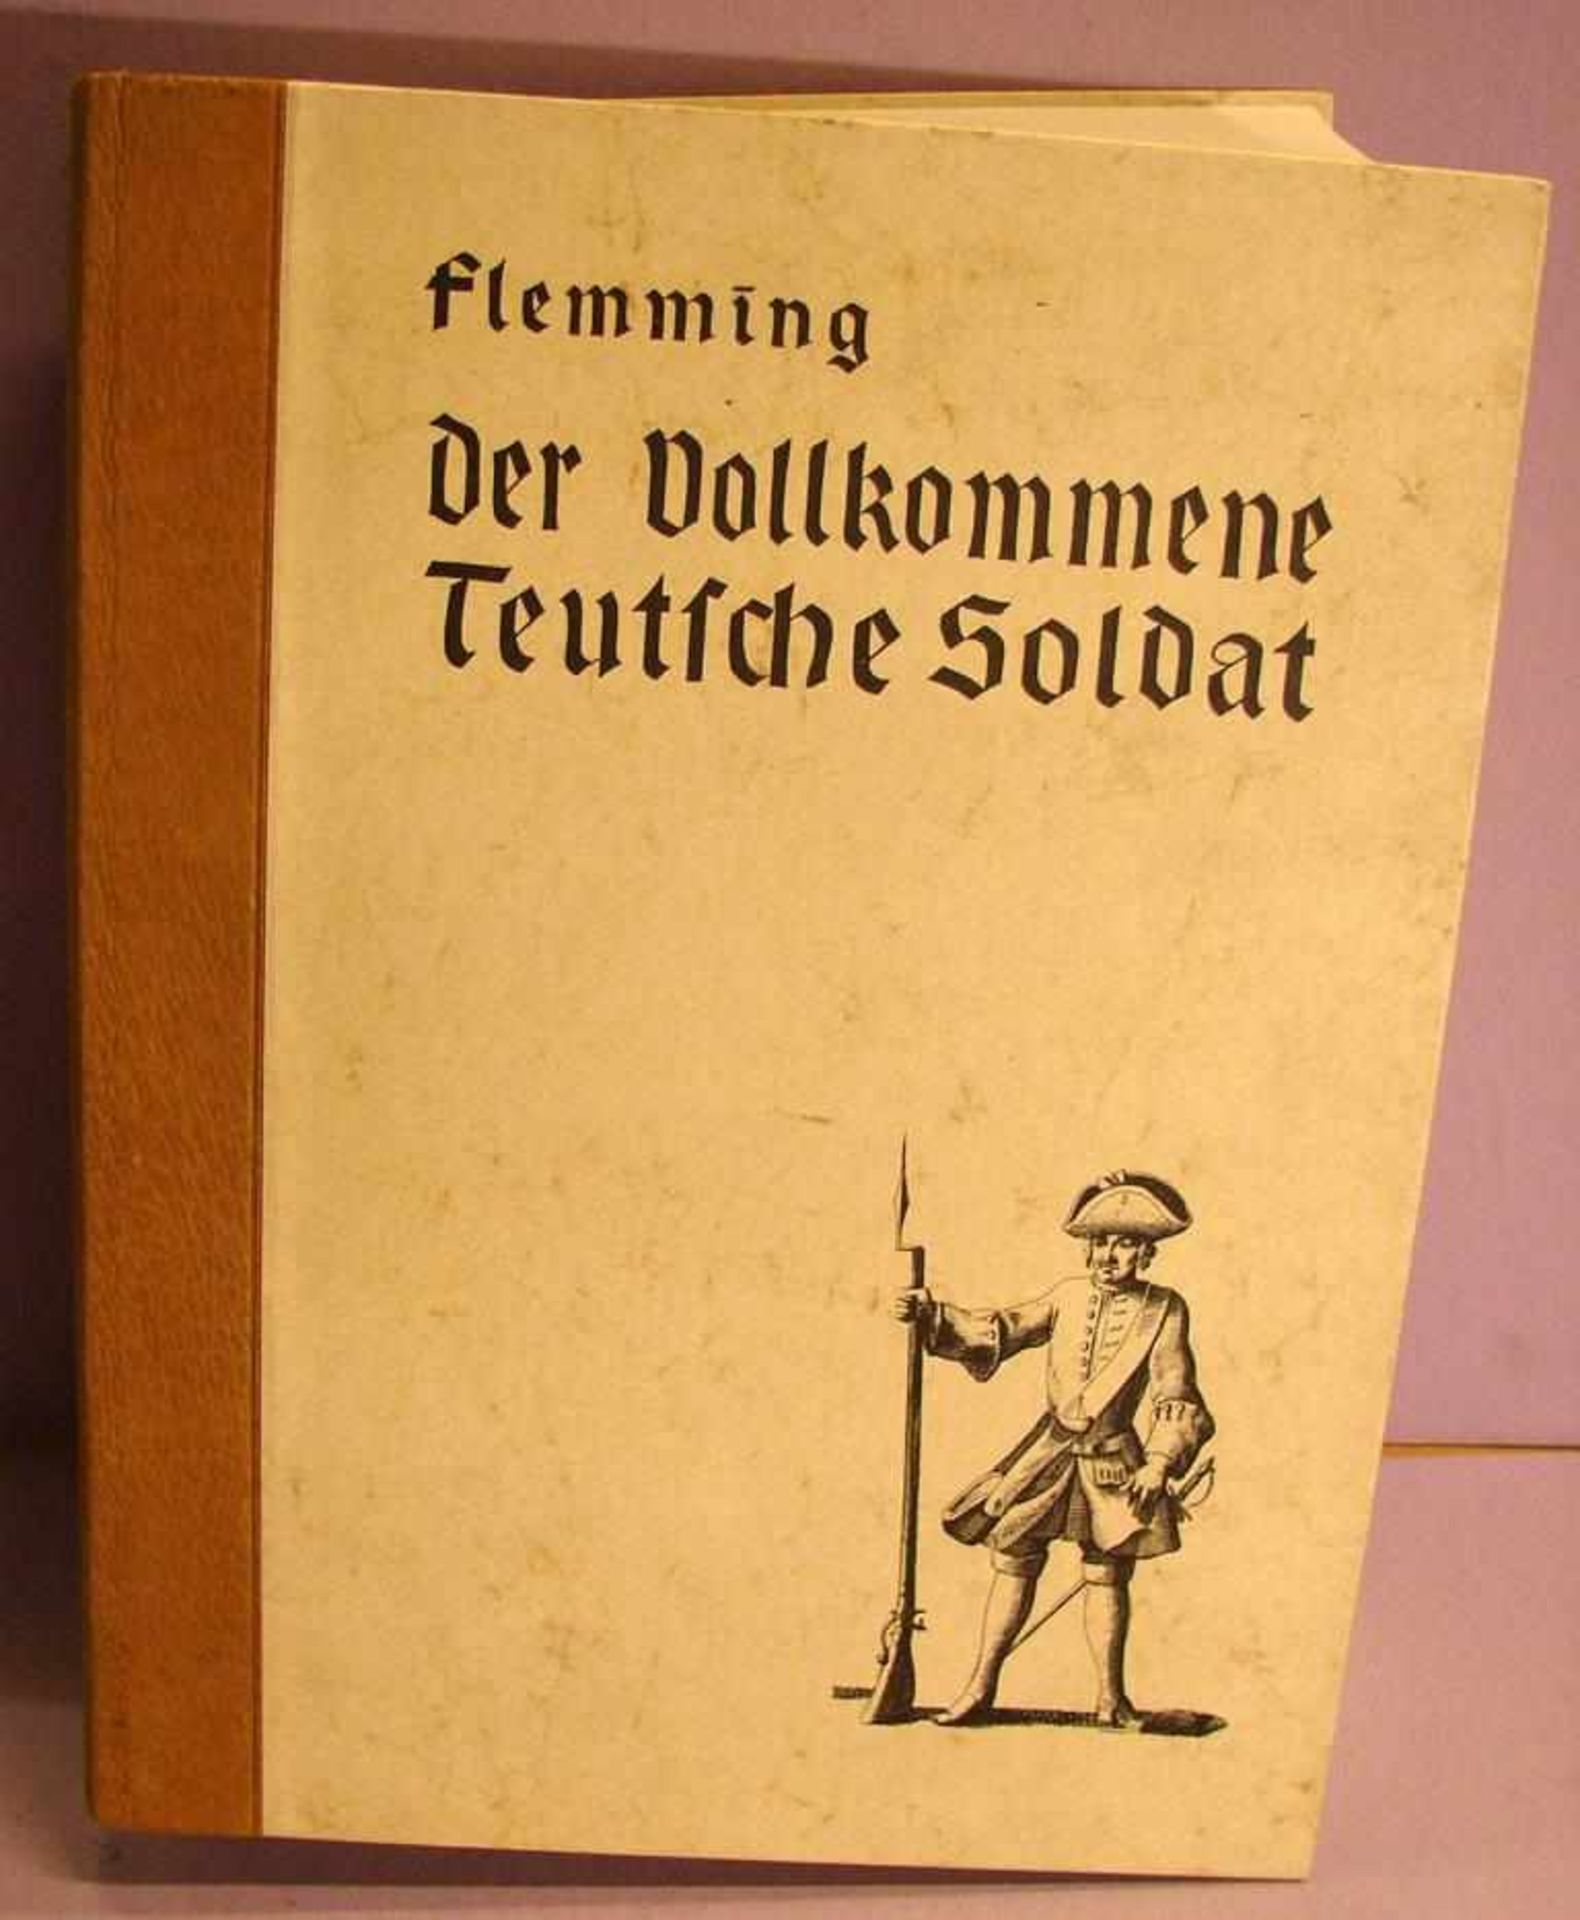 Buch, "Der vollkommene Teutsche Soldat", 1967, Flemming, Nachdruck von 1726